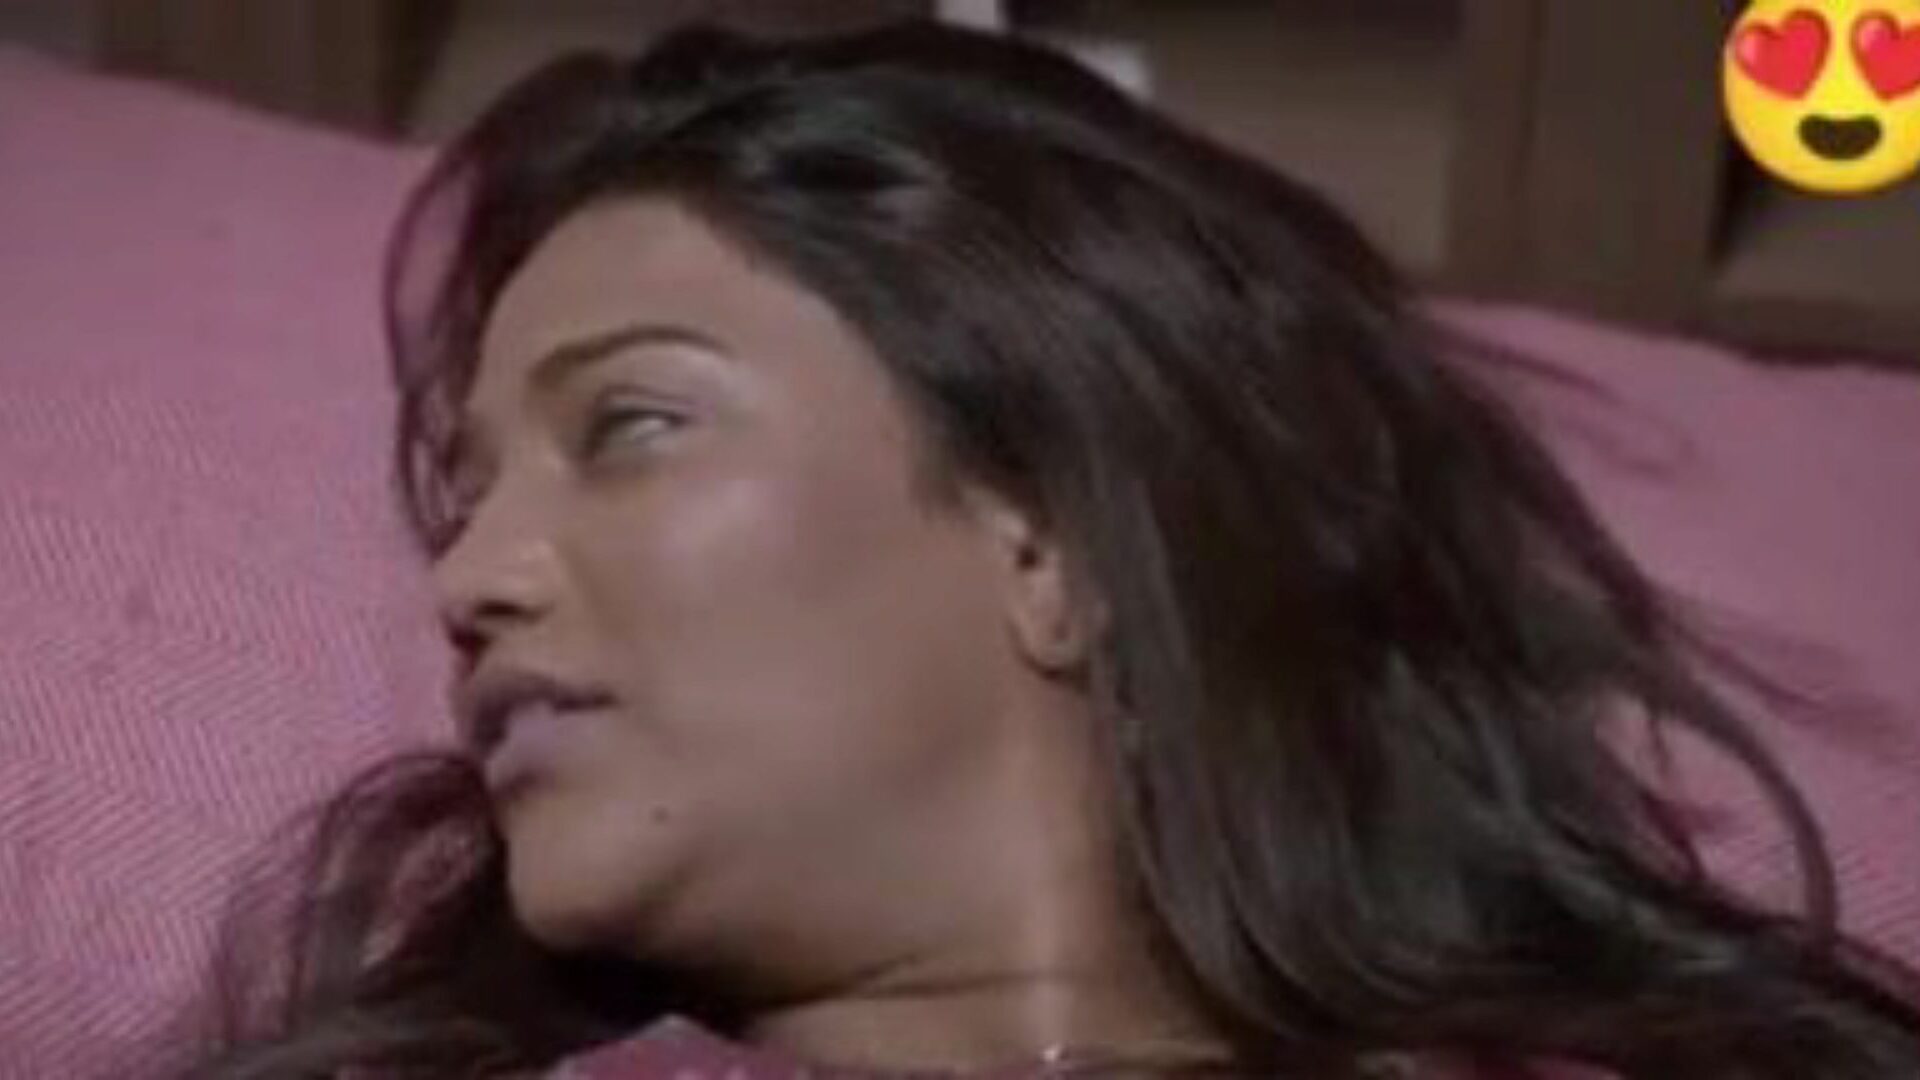 double dhamaka saree sex, porno indio gratis da: xhamster mira la película de sexo double dhamaka saree en xhamster, el recurso web de tubo de relaciones sexuales masivo con toneladas de escenas de películas porno hindi y xxx gratis para todos.